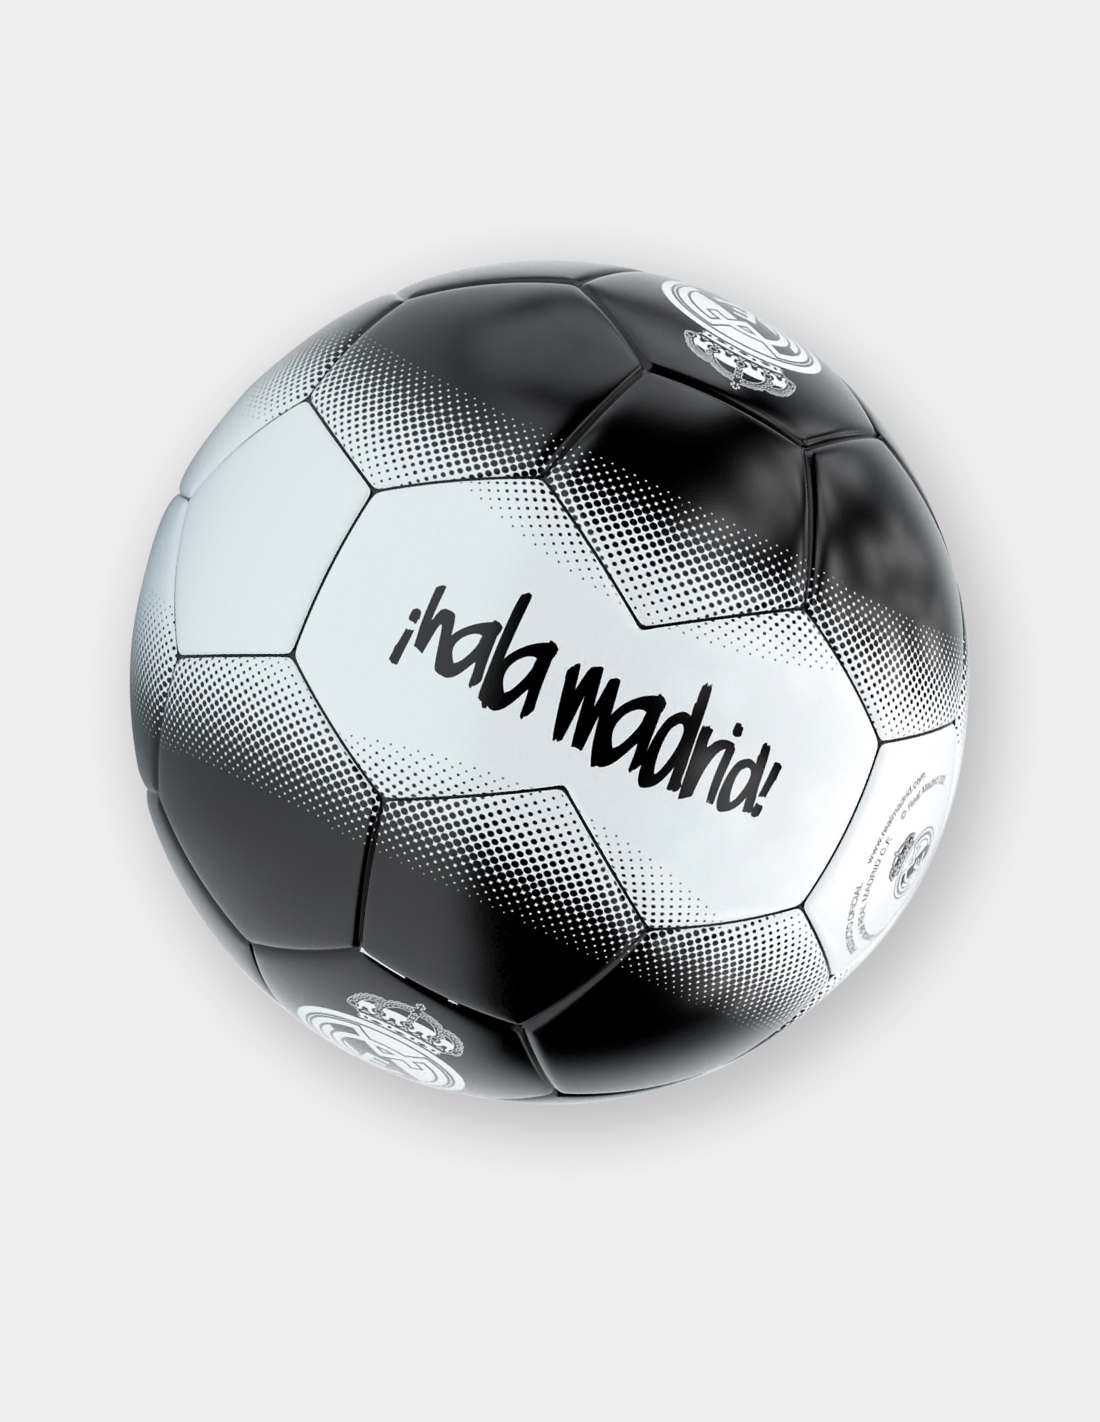 Balón de Futbol Real Madrid No.5 - Opción A shop